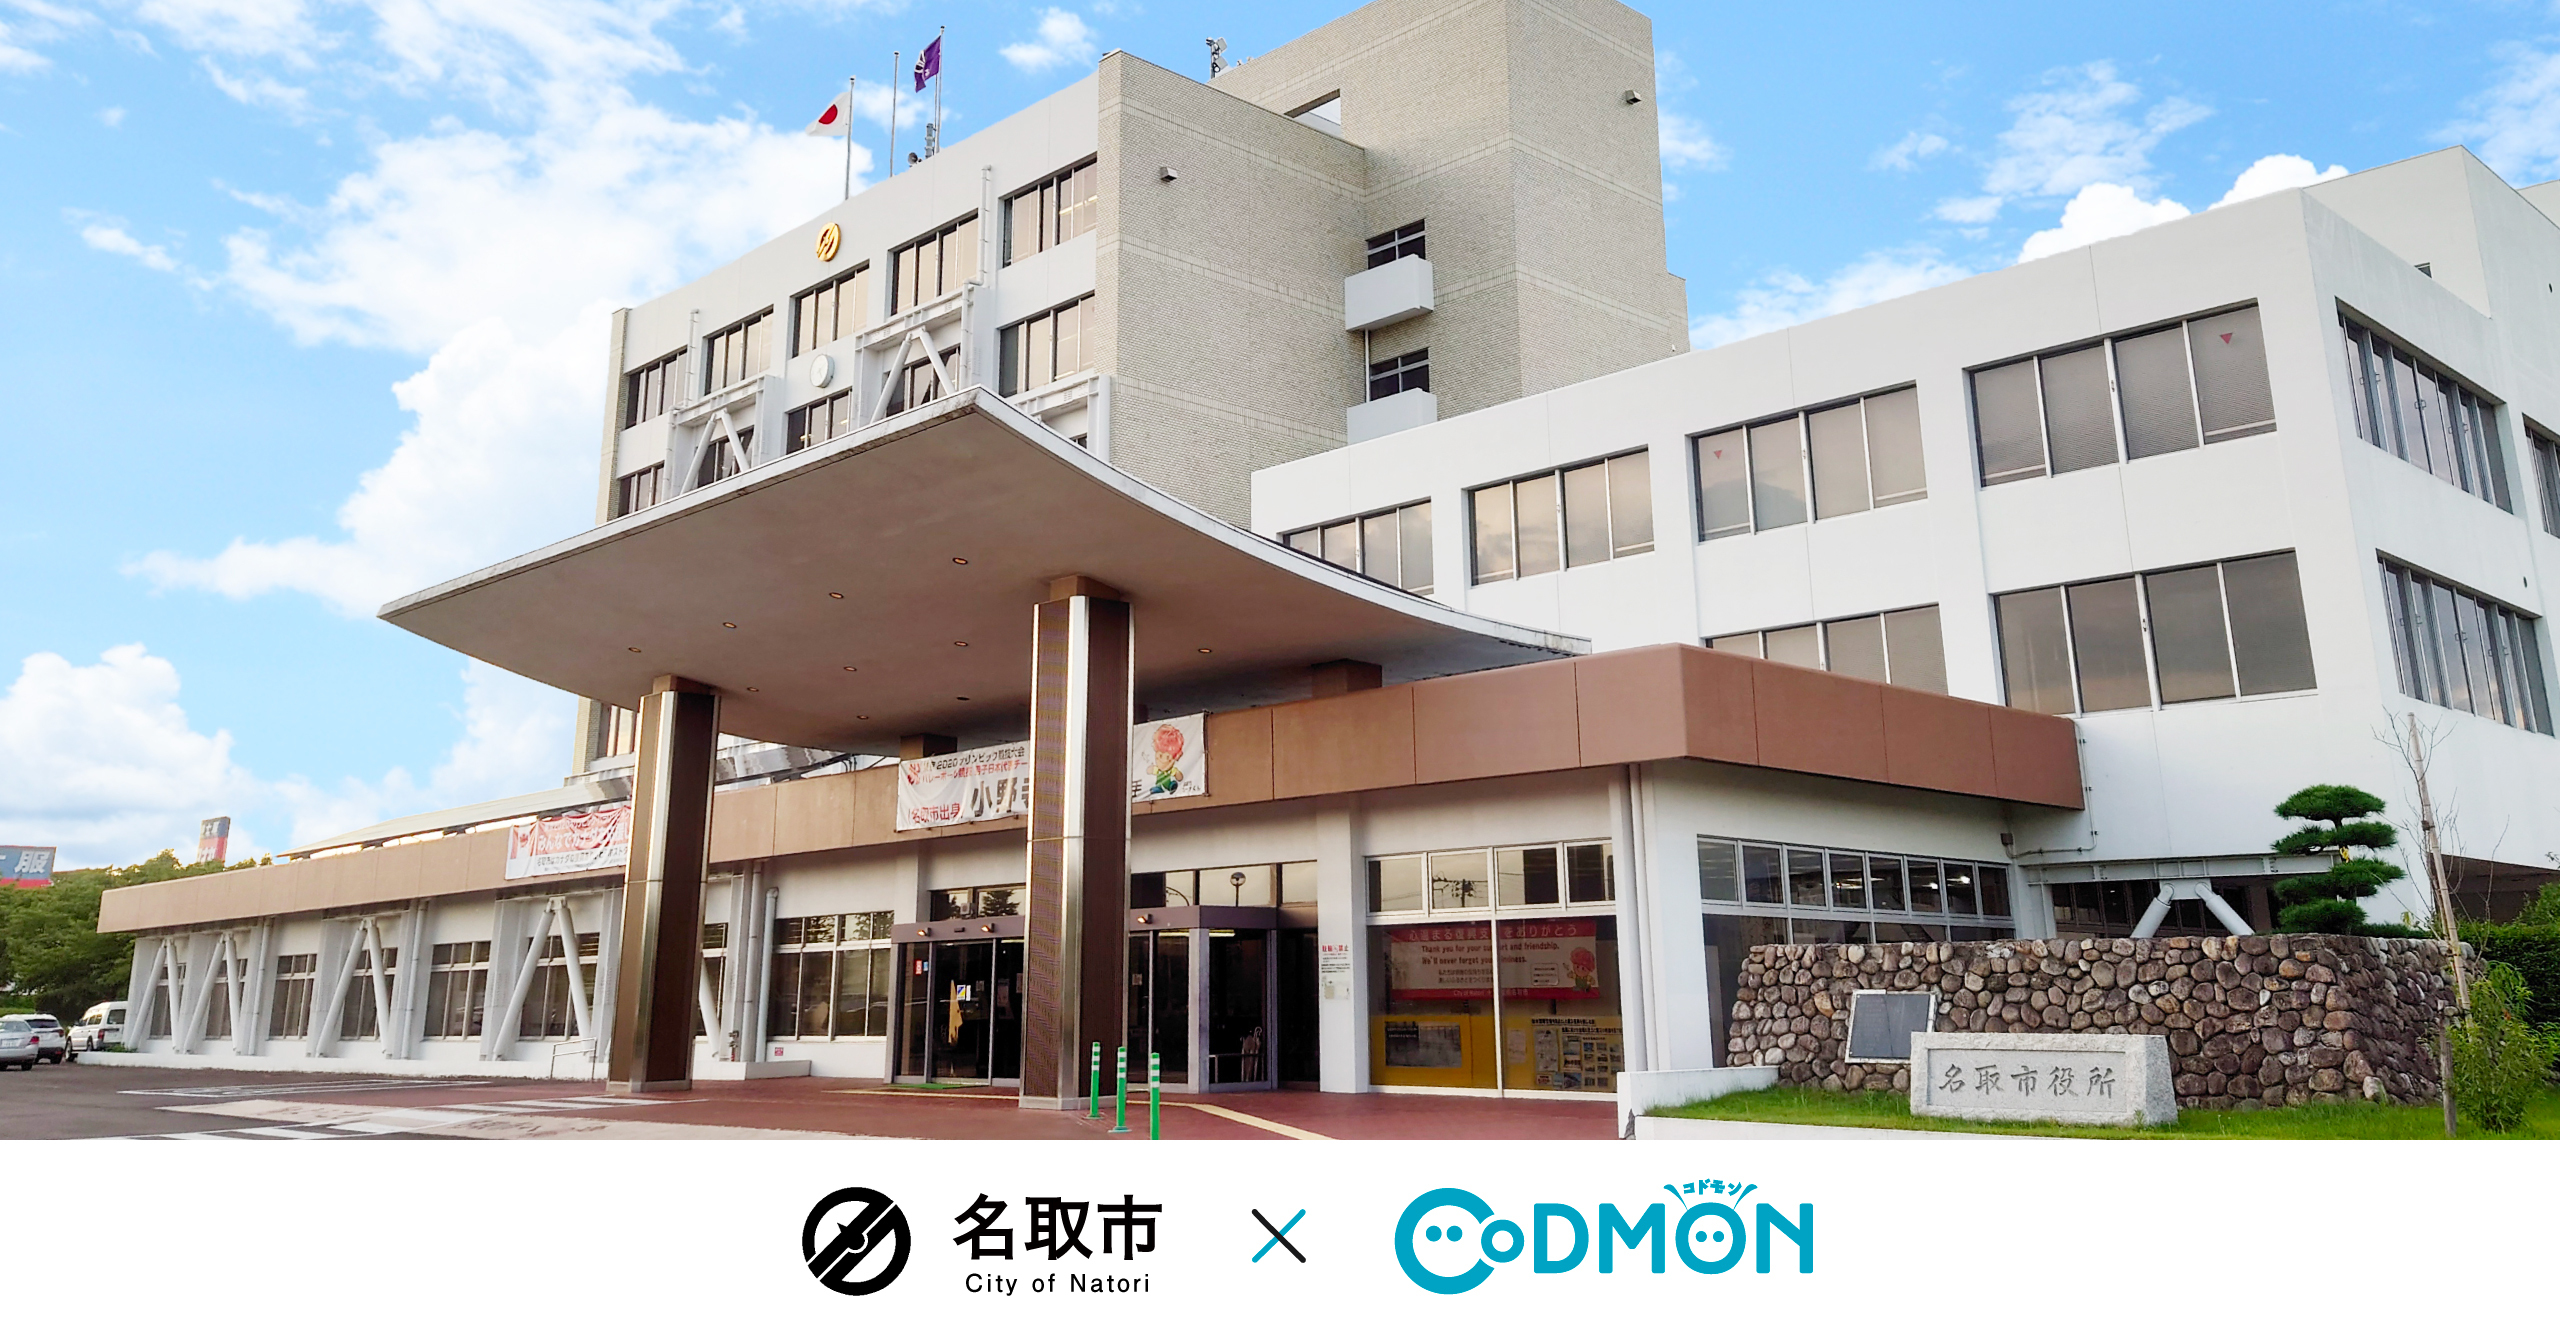 コドモン、宮城県名取市の学童保育施設において 保育ICTシステム「CoDMON」導入